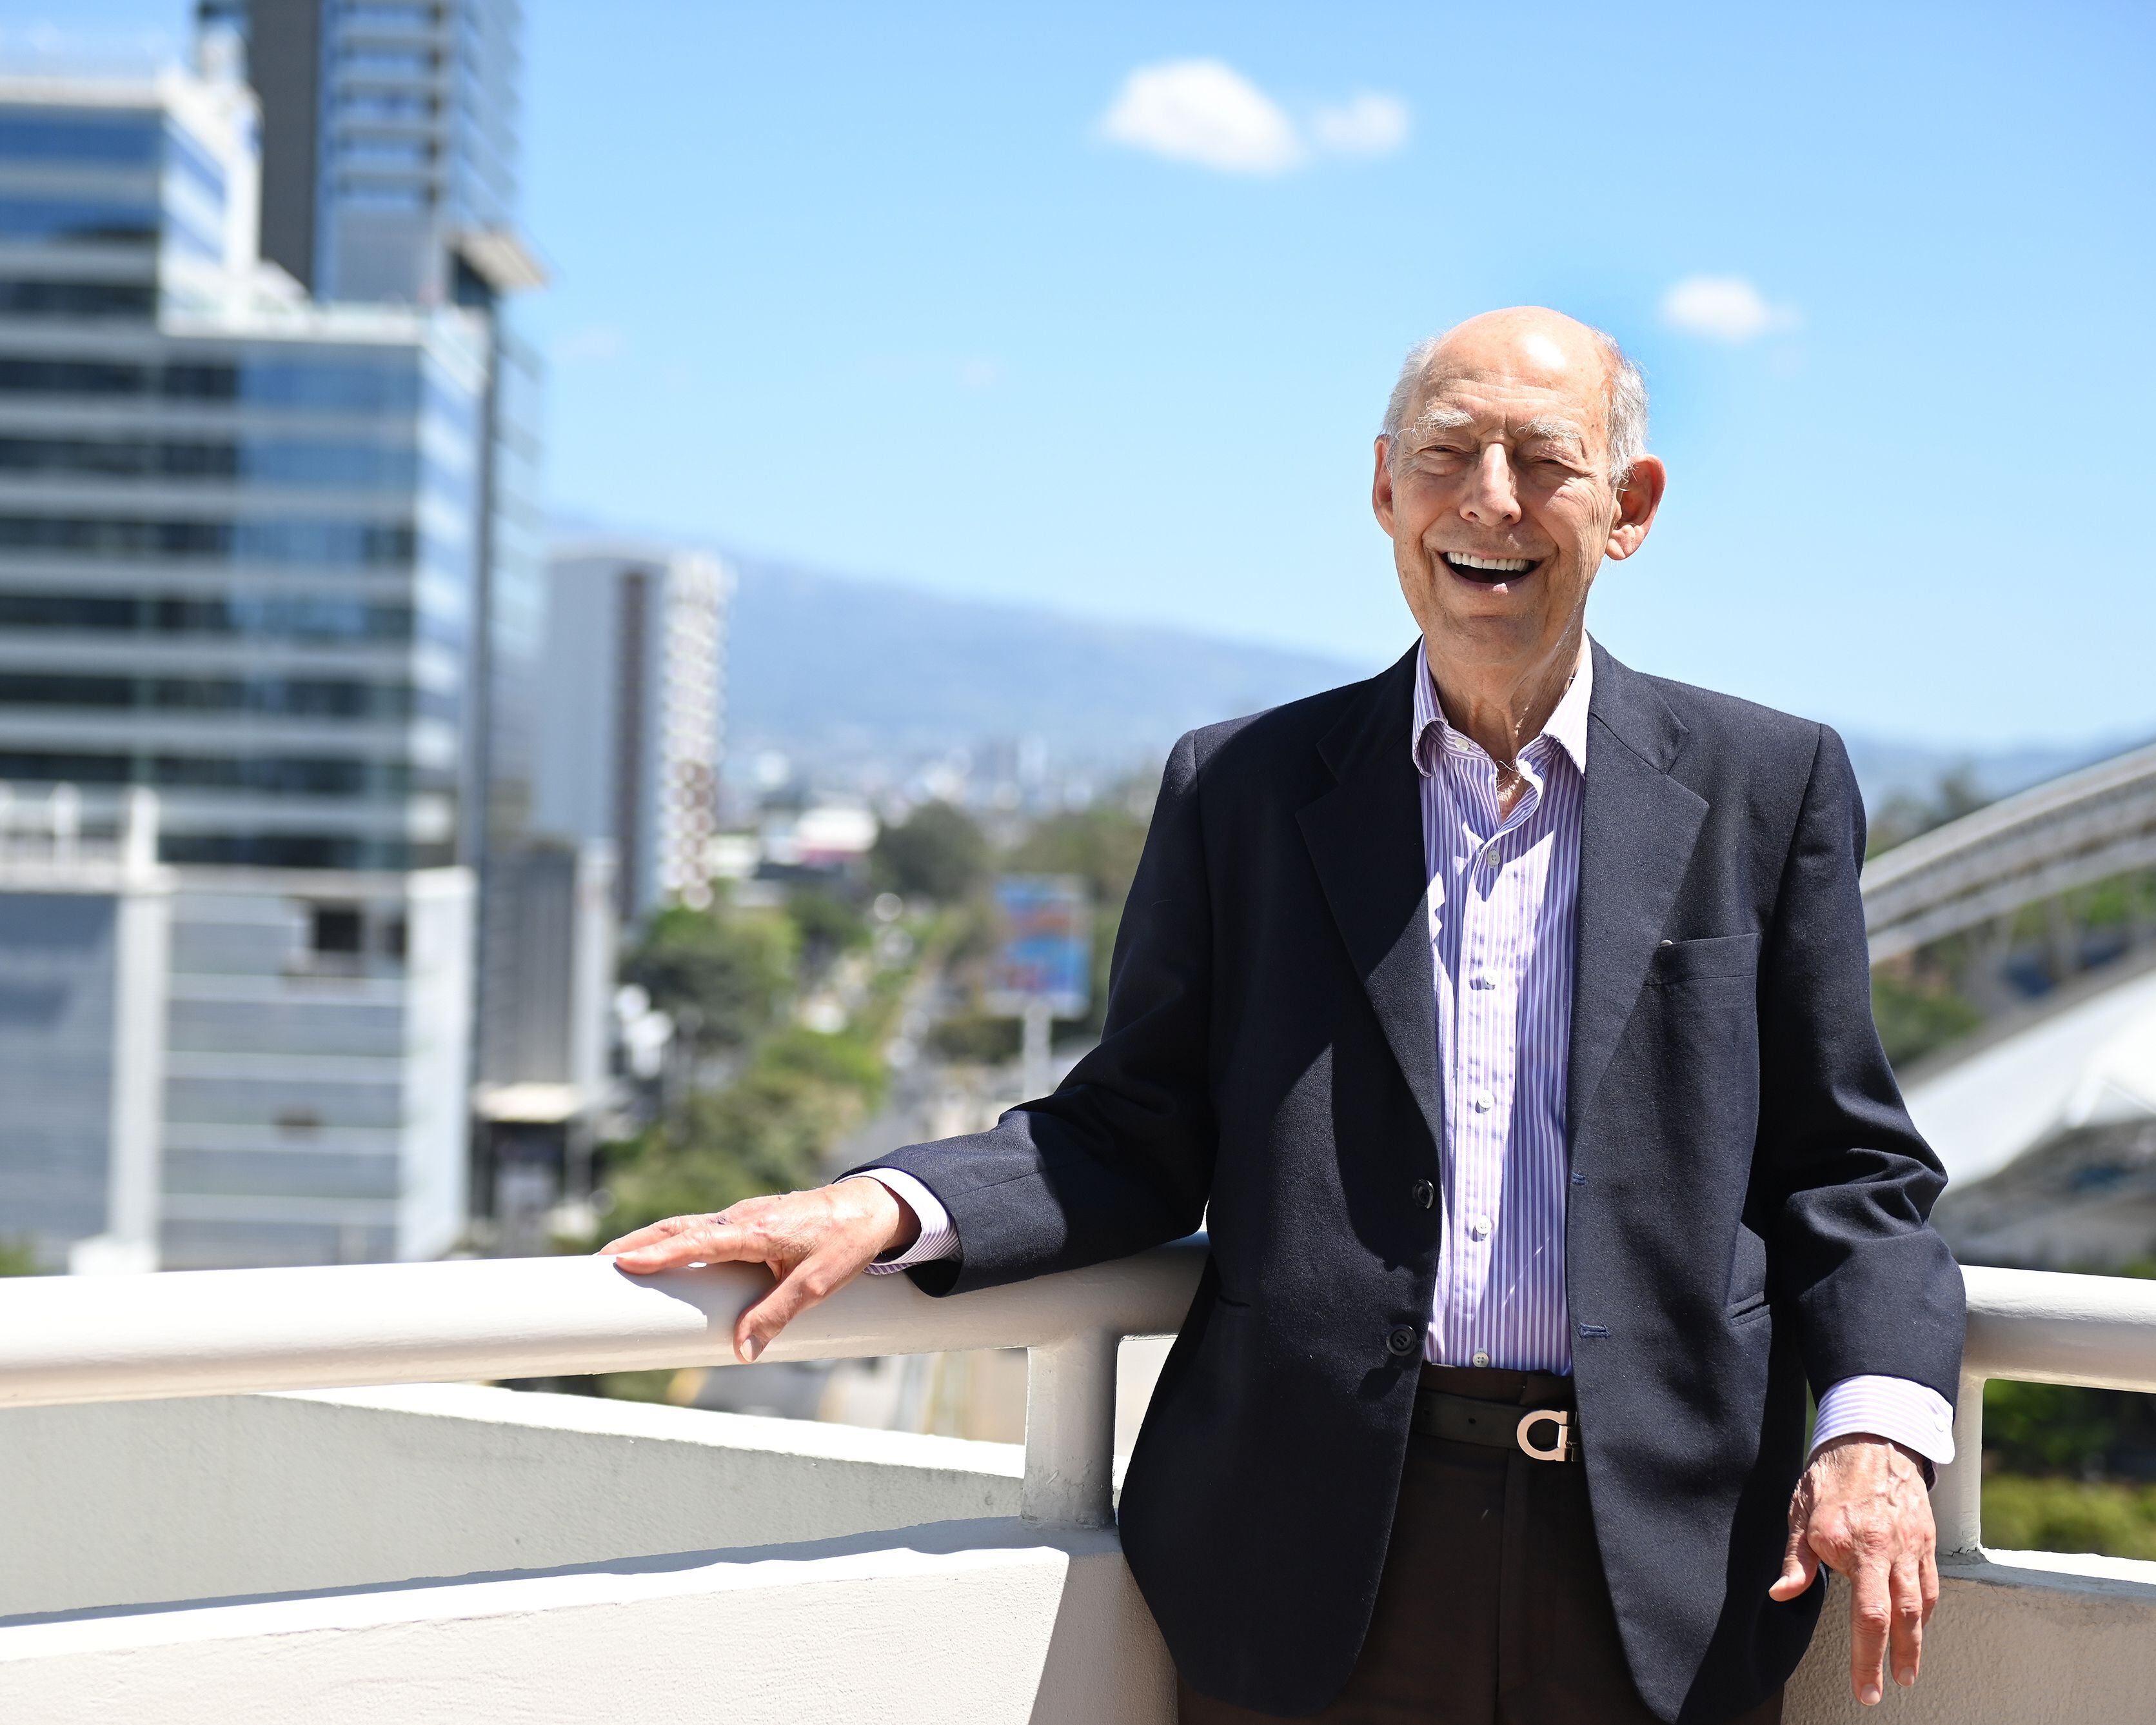 Eduardo Lizano Fait cumplió 90 años este jueves 8 de febrero. A este economista y pensador le encanta celebrar su natalicio. 